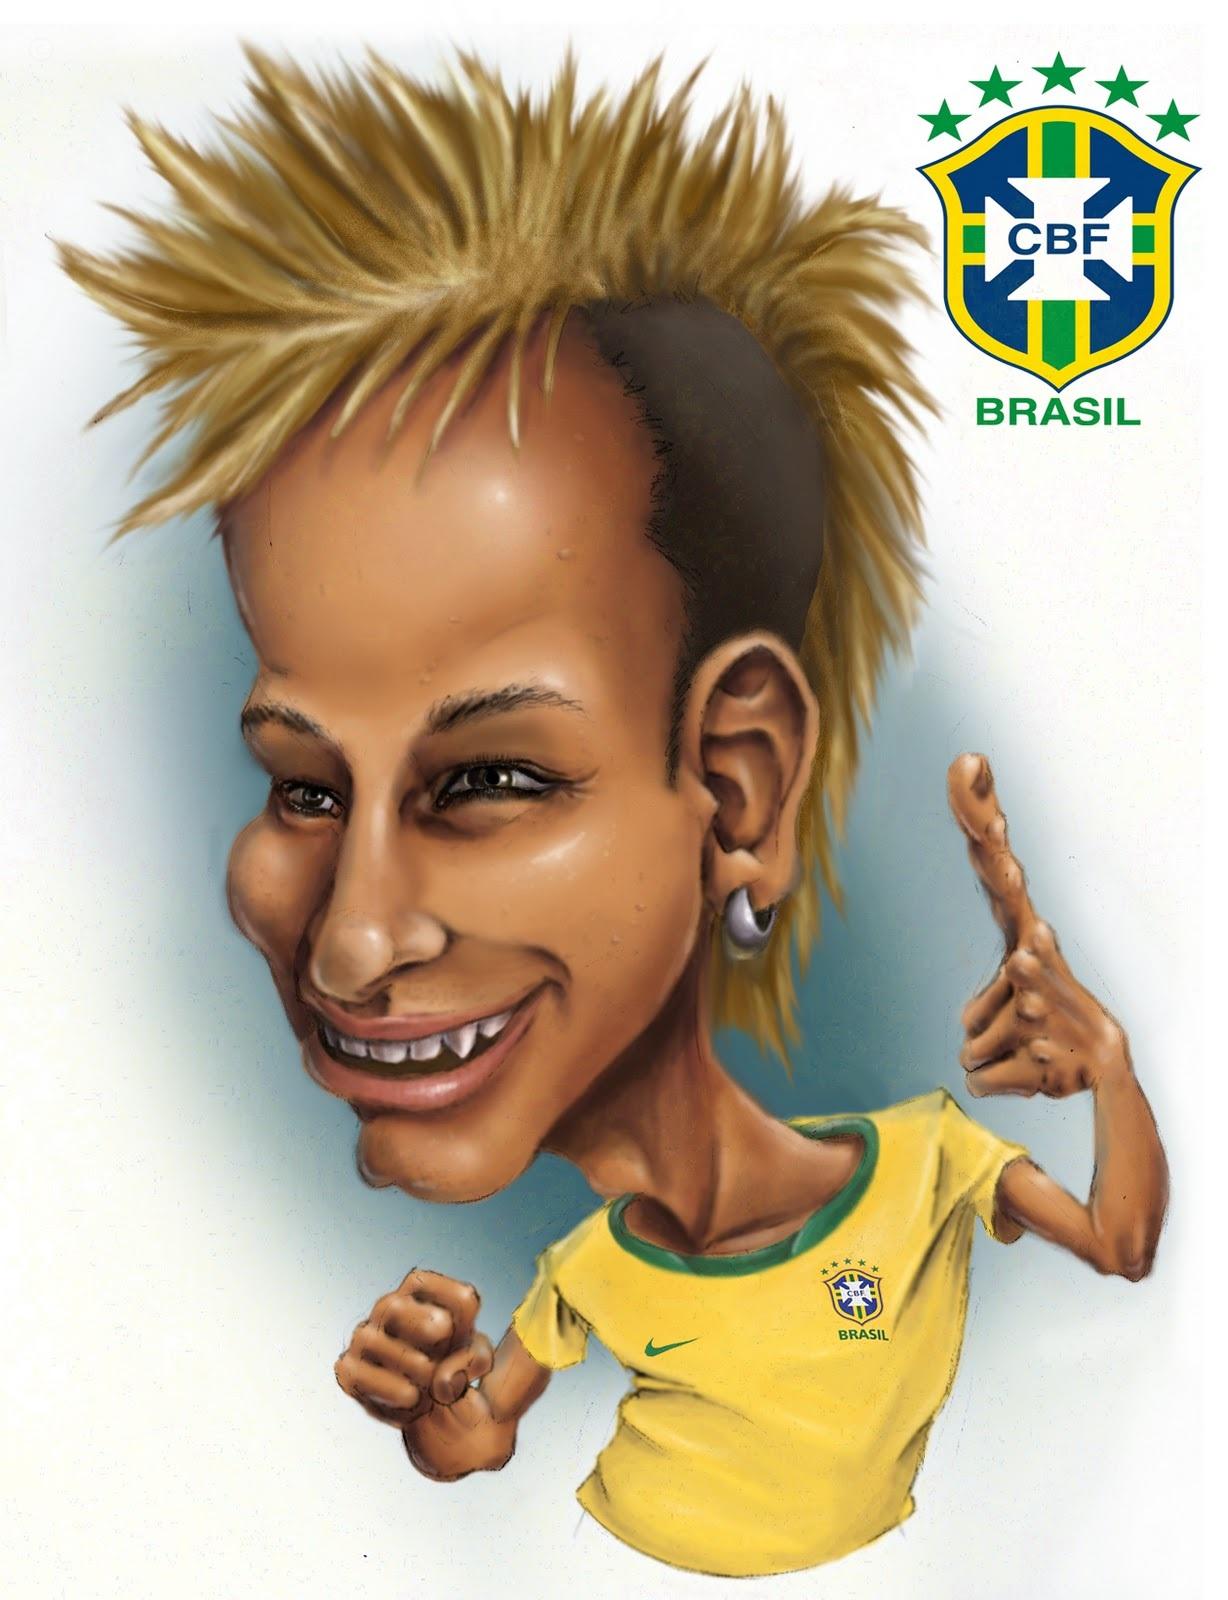 Neymar Wallpaper - Brazil Football - HD Wallpaper 